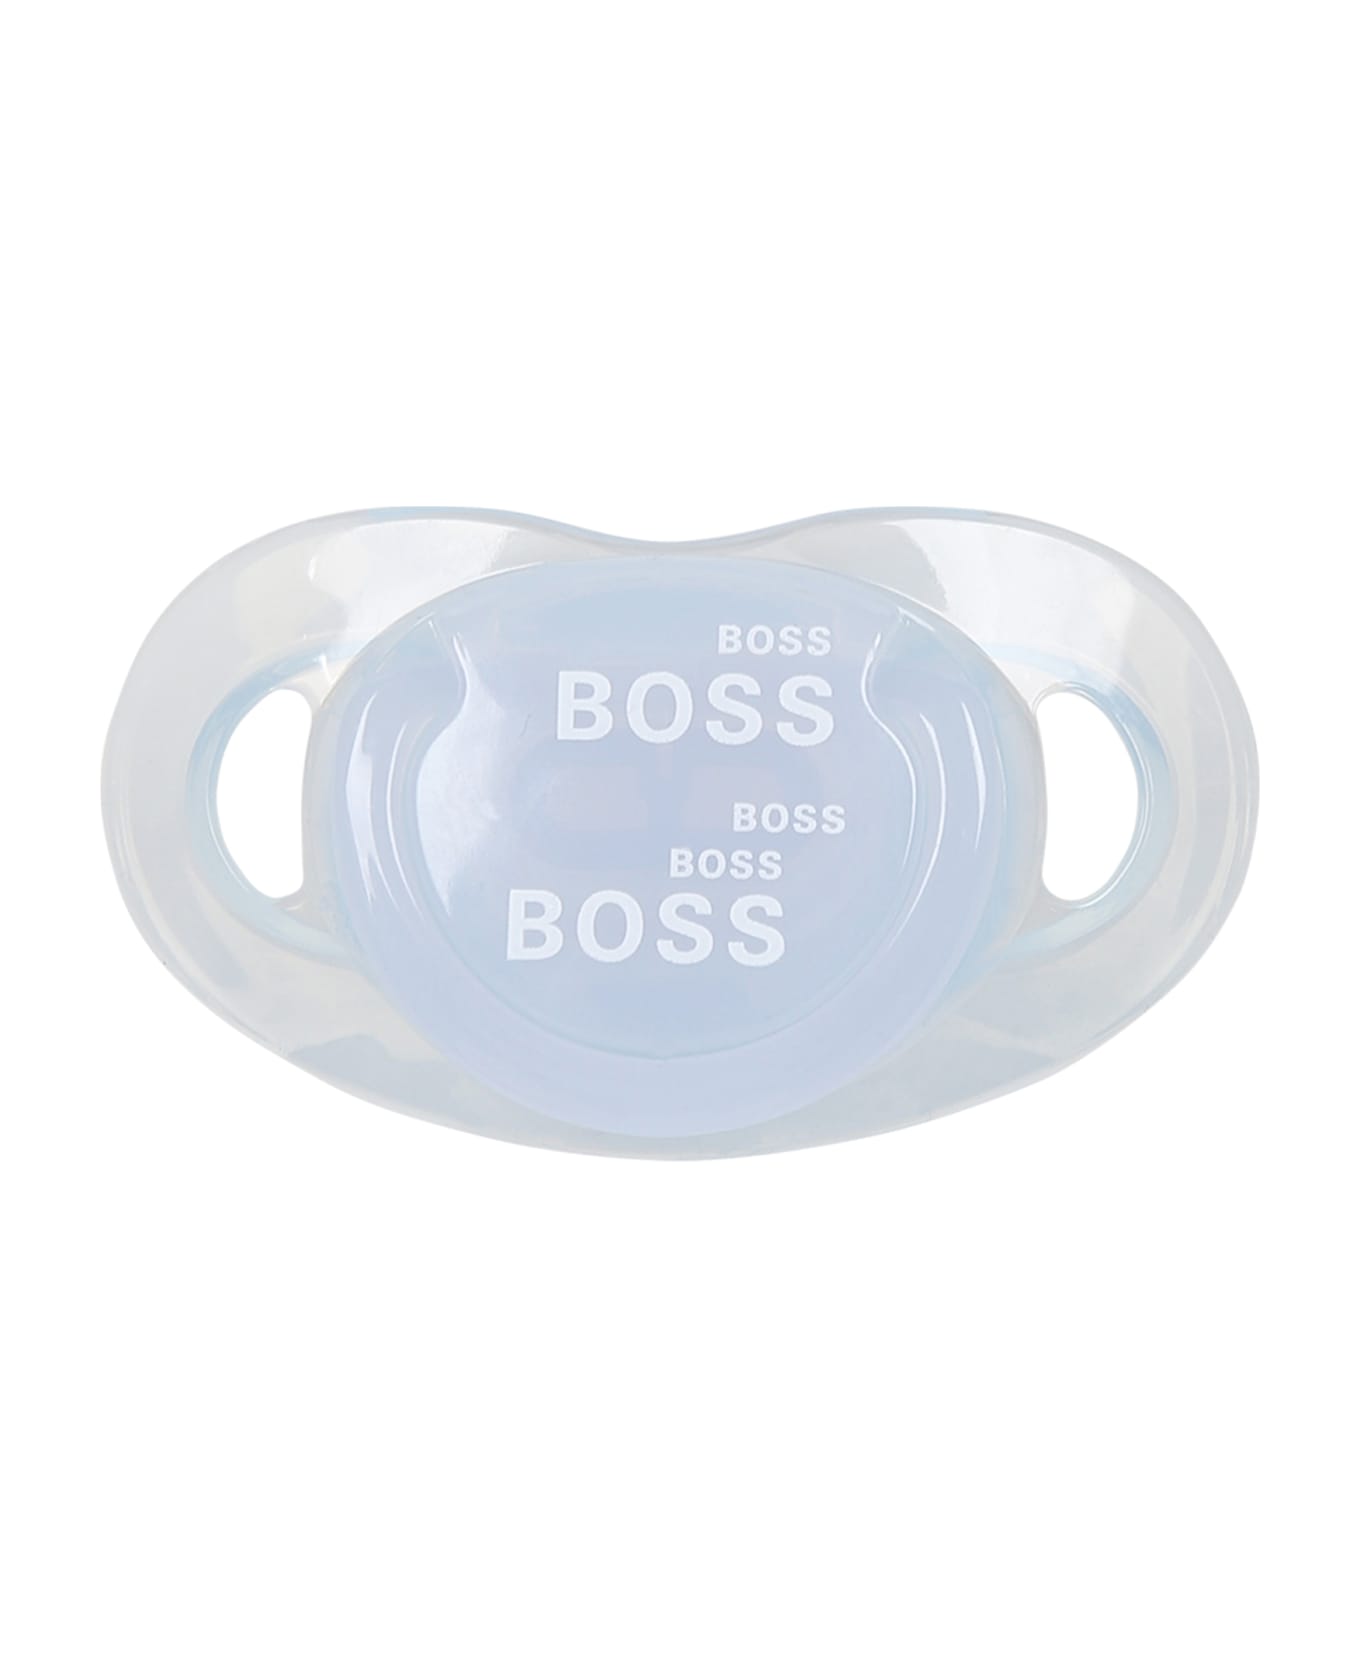 Hugo Boss Light Blue Set For Baby Boy With Logo - Transparent